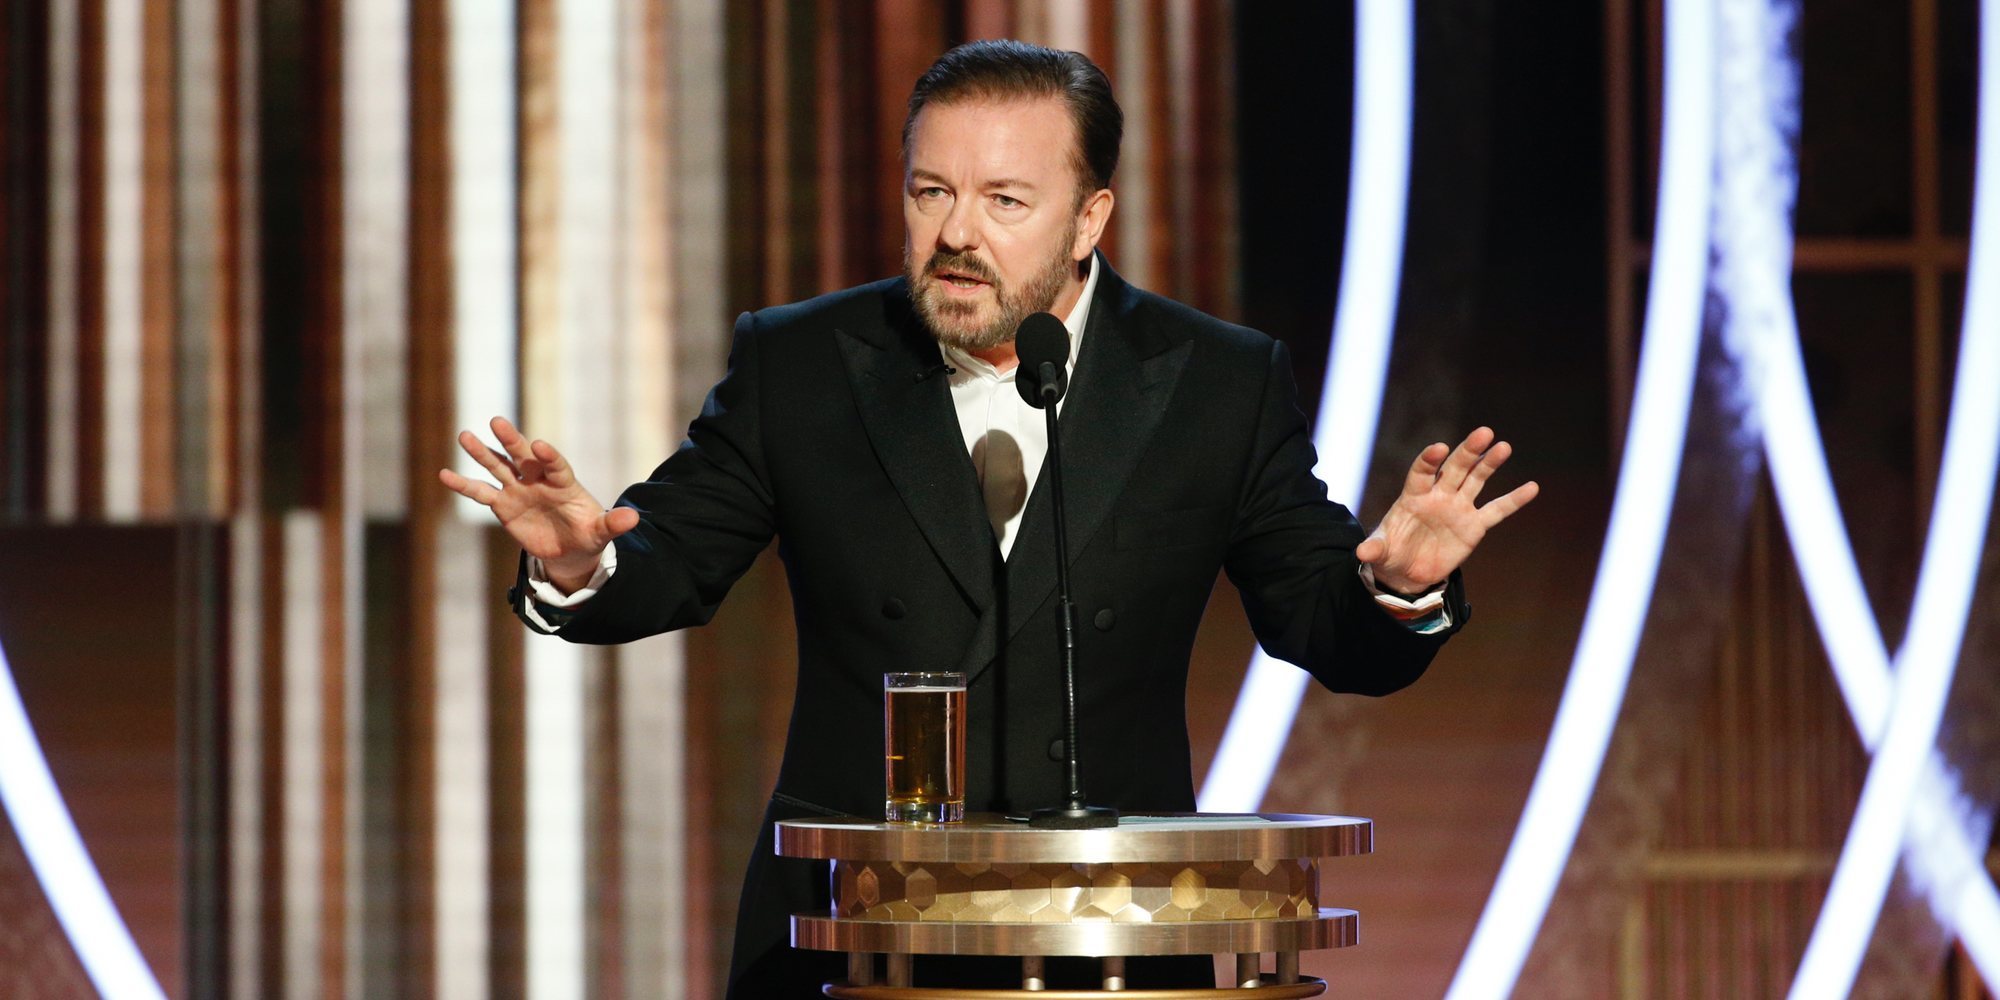 Las polémicas bromas de Ricky Gervais sobre sexo, pederastia y suicidios durante los Globos de Oro 2020